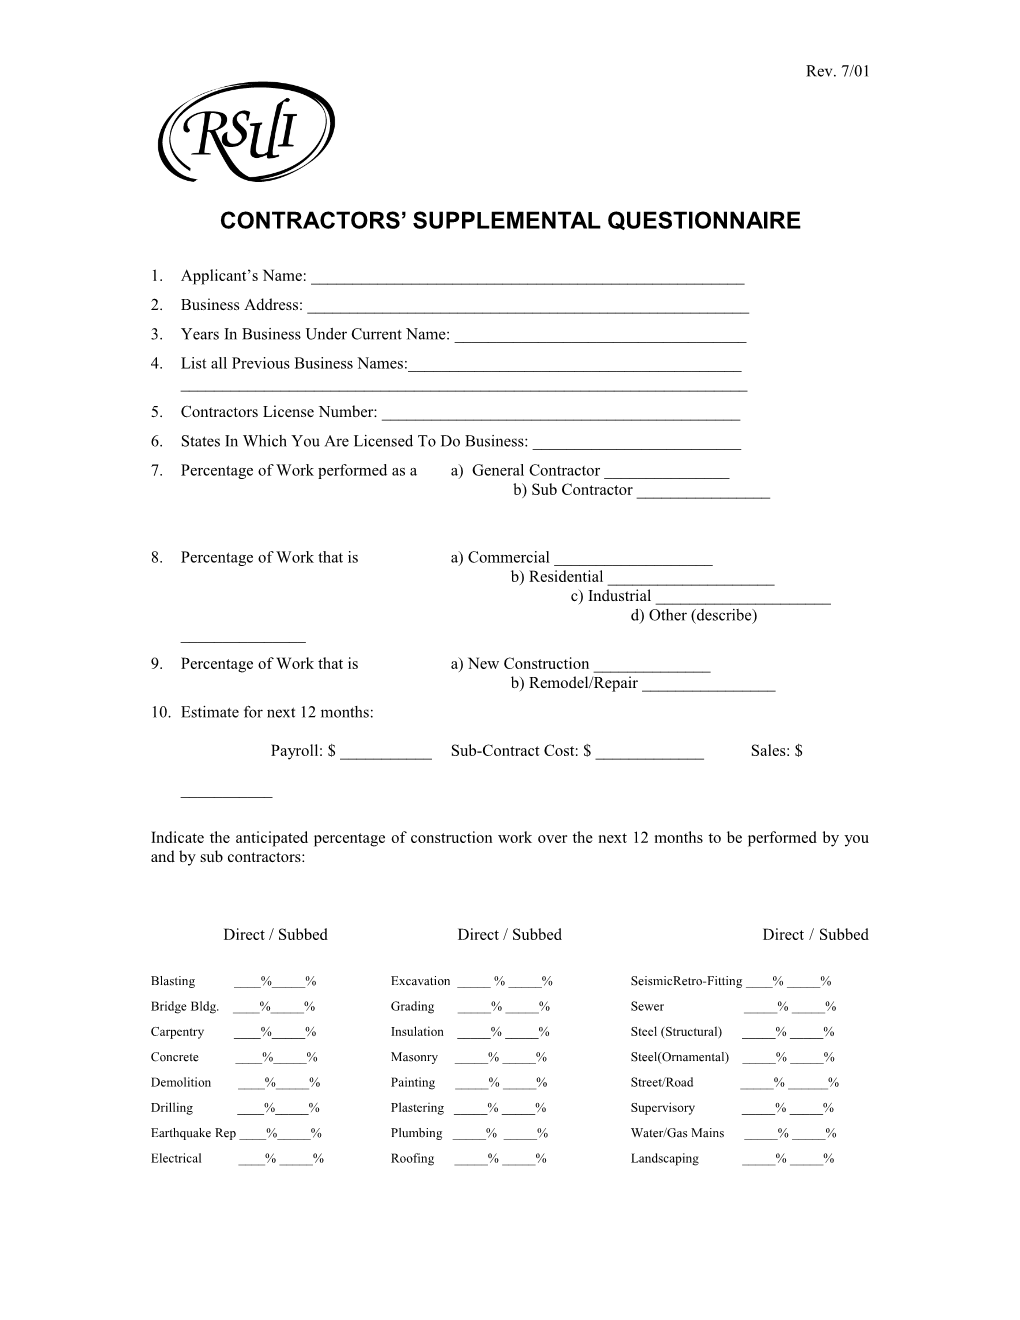 Contractors Supplemental Questionnaire